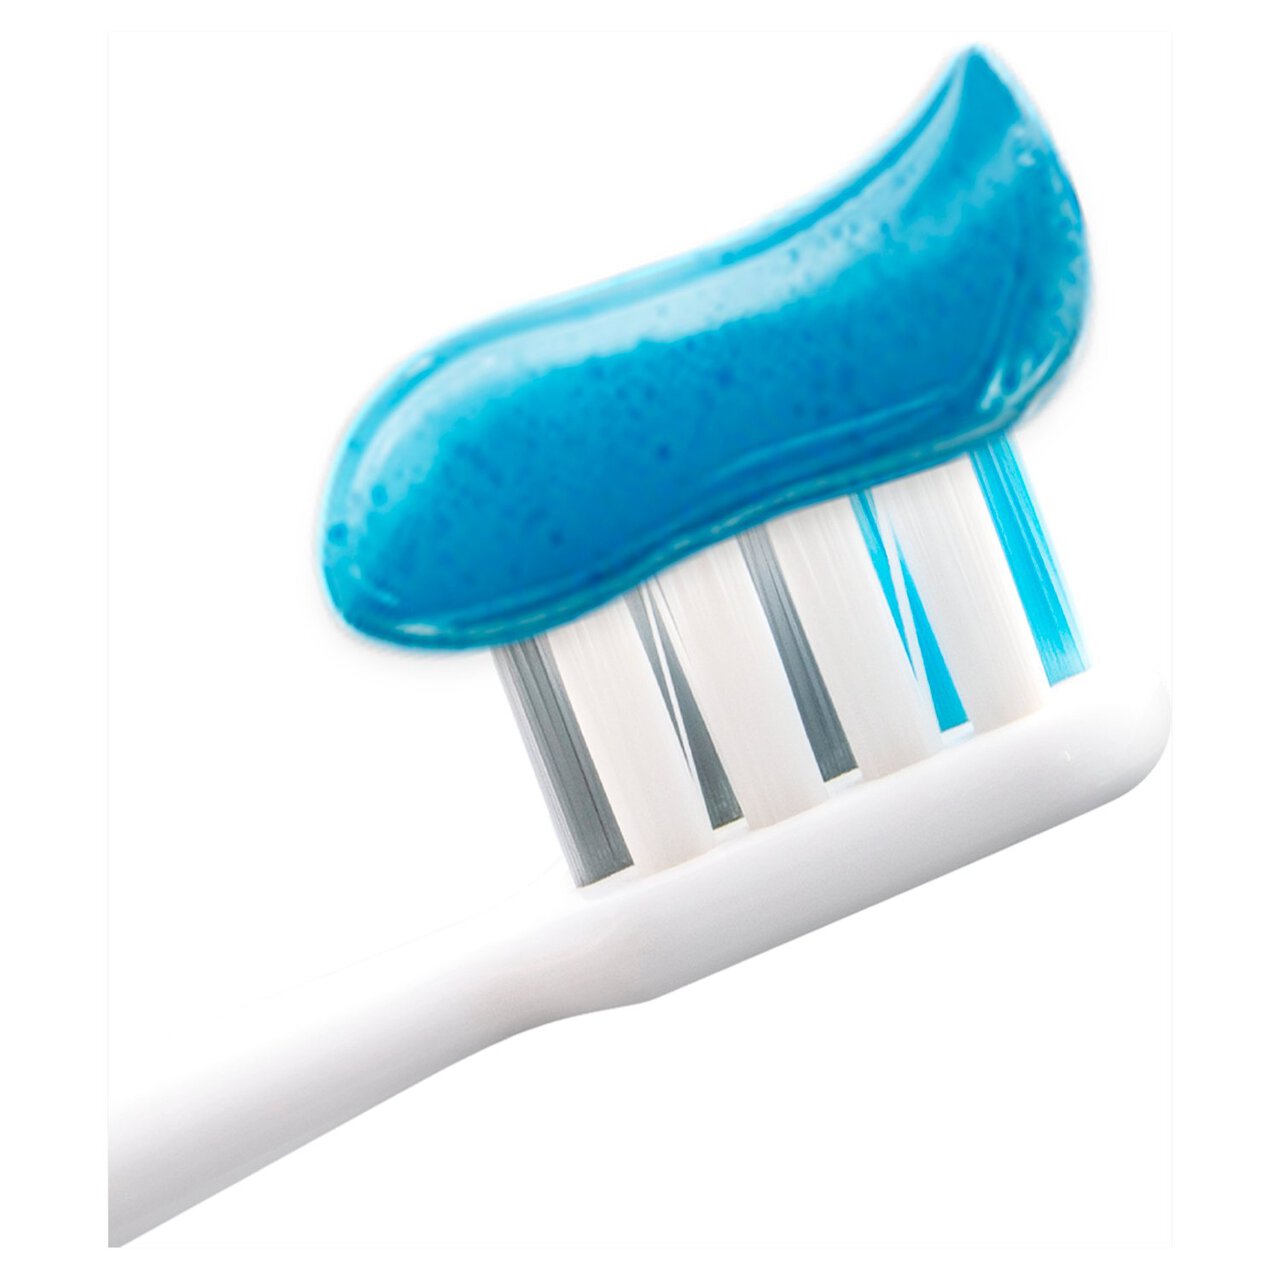 Colgate Max White One Whitening Toothpaste 3 x 75ml